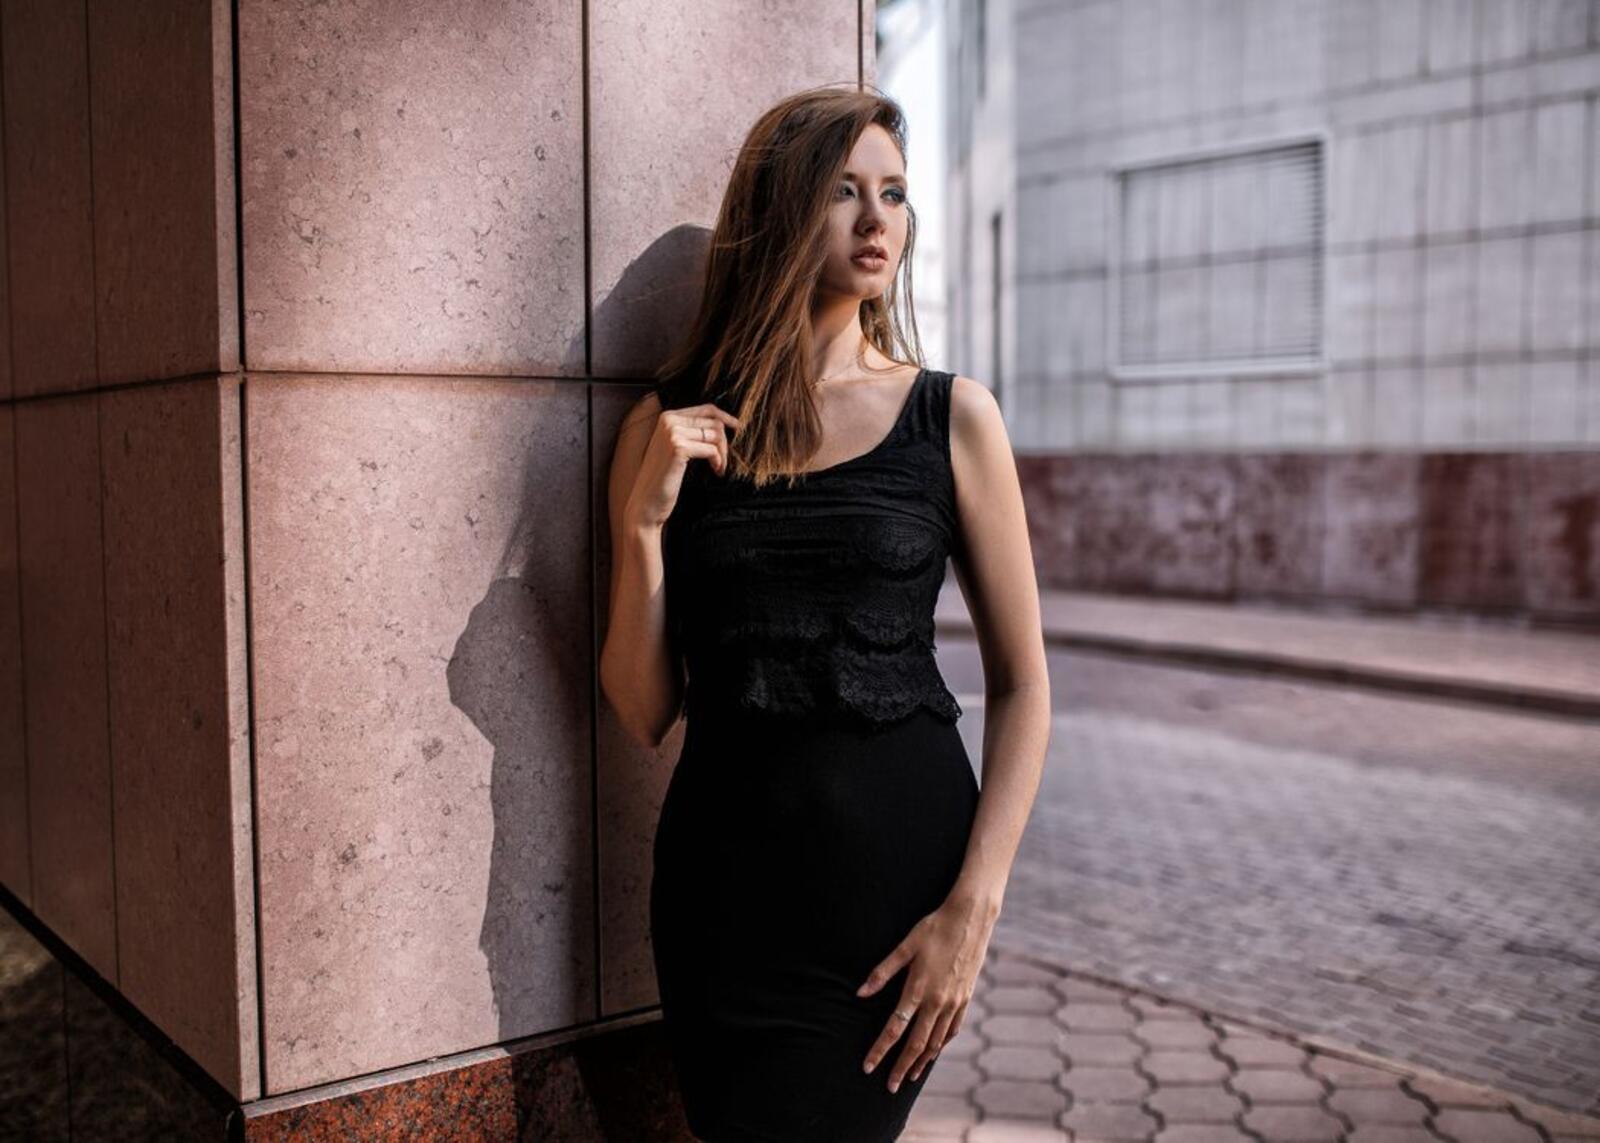 Wallpapers Disha Shemetova for girls model on the desktop